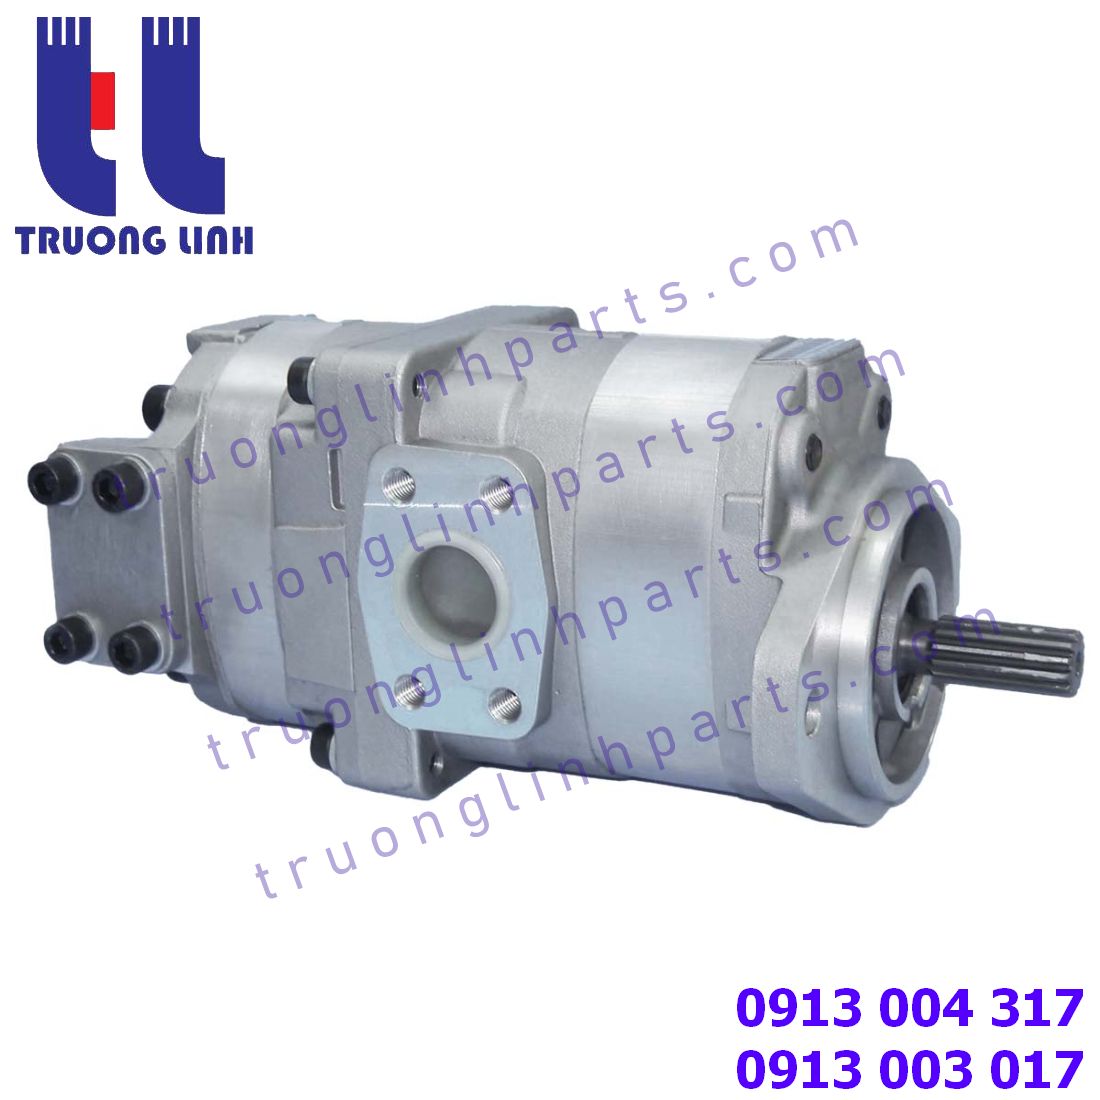 705-51-20070 Hydraulic gear pump